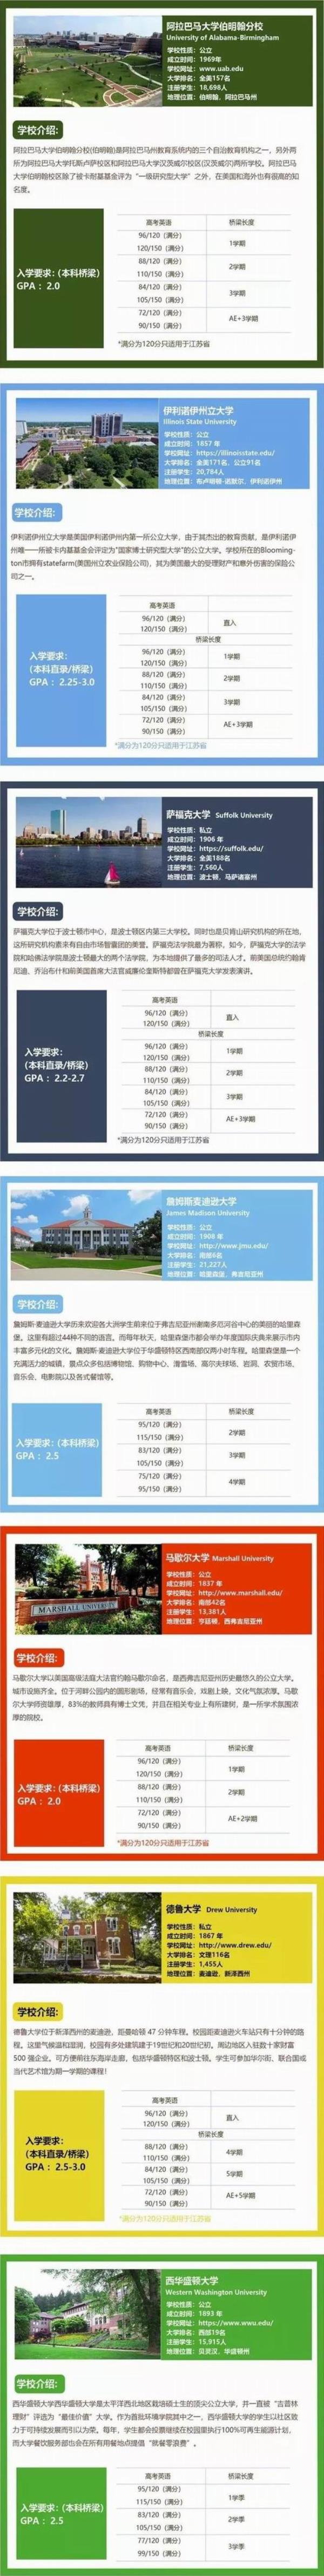 科罗拉多大学在中国的认可度_科罗拉多学院在中国的认可度